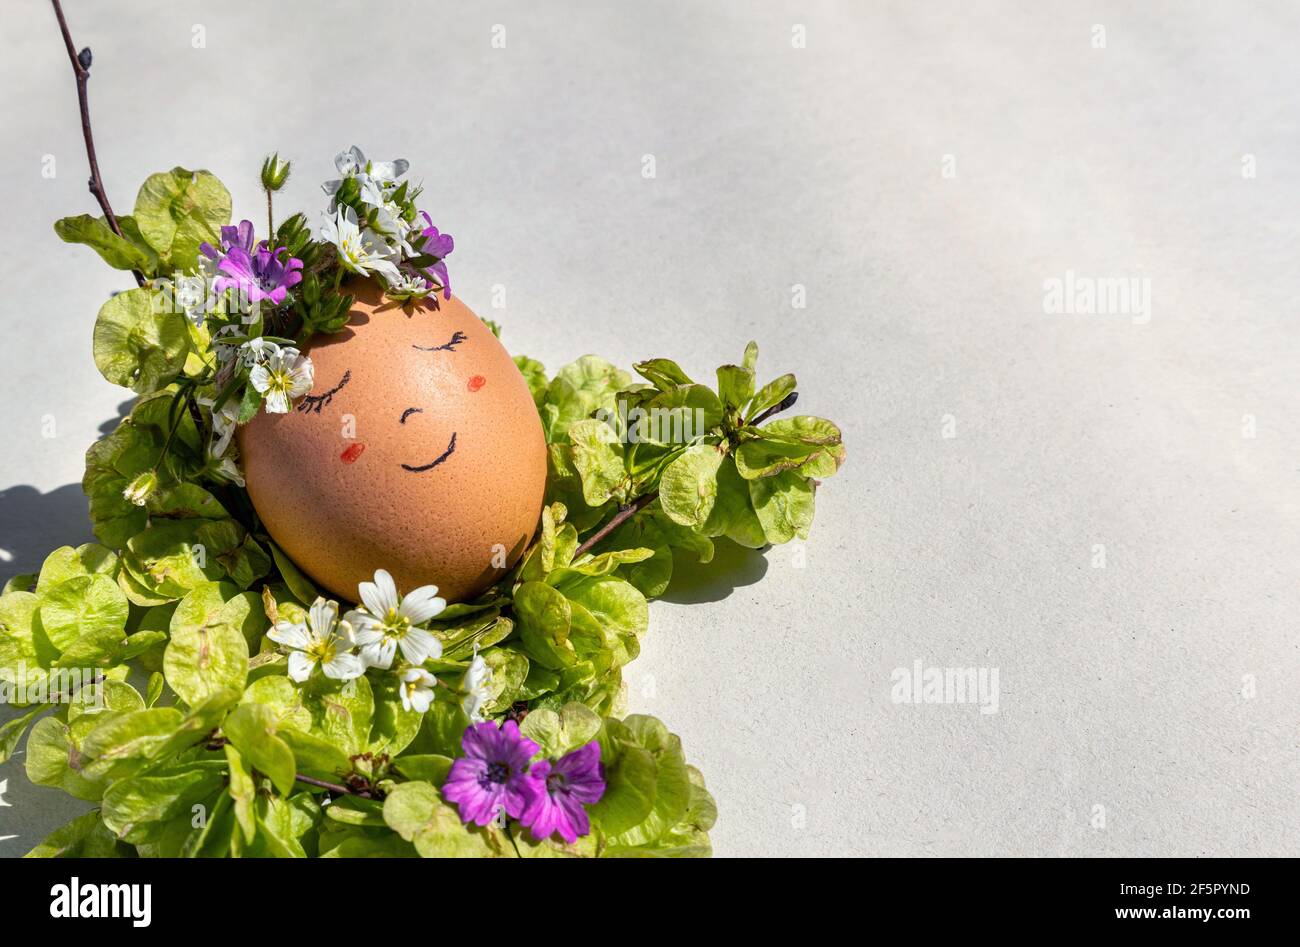 Ein lächelndes Ei für ein Ostern- und Frühlingskonzept. Ein Ei mit einem lächelnden Gesicht und einer Blumengirlande, die die Frühlingssonne auf einem Bett aus Ulmenkernen genießt. Stockfoto